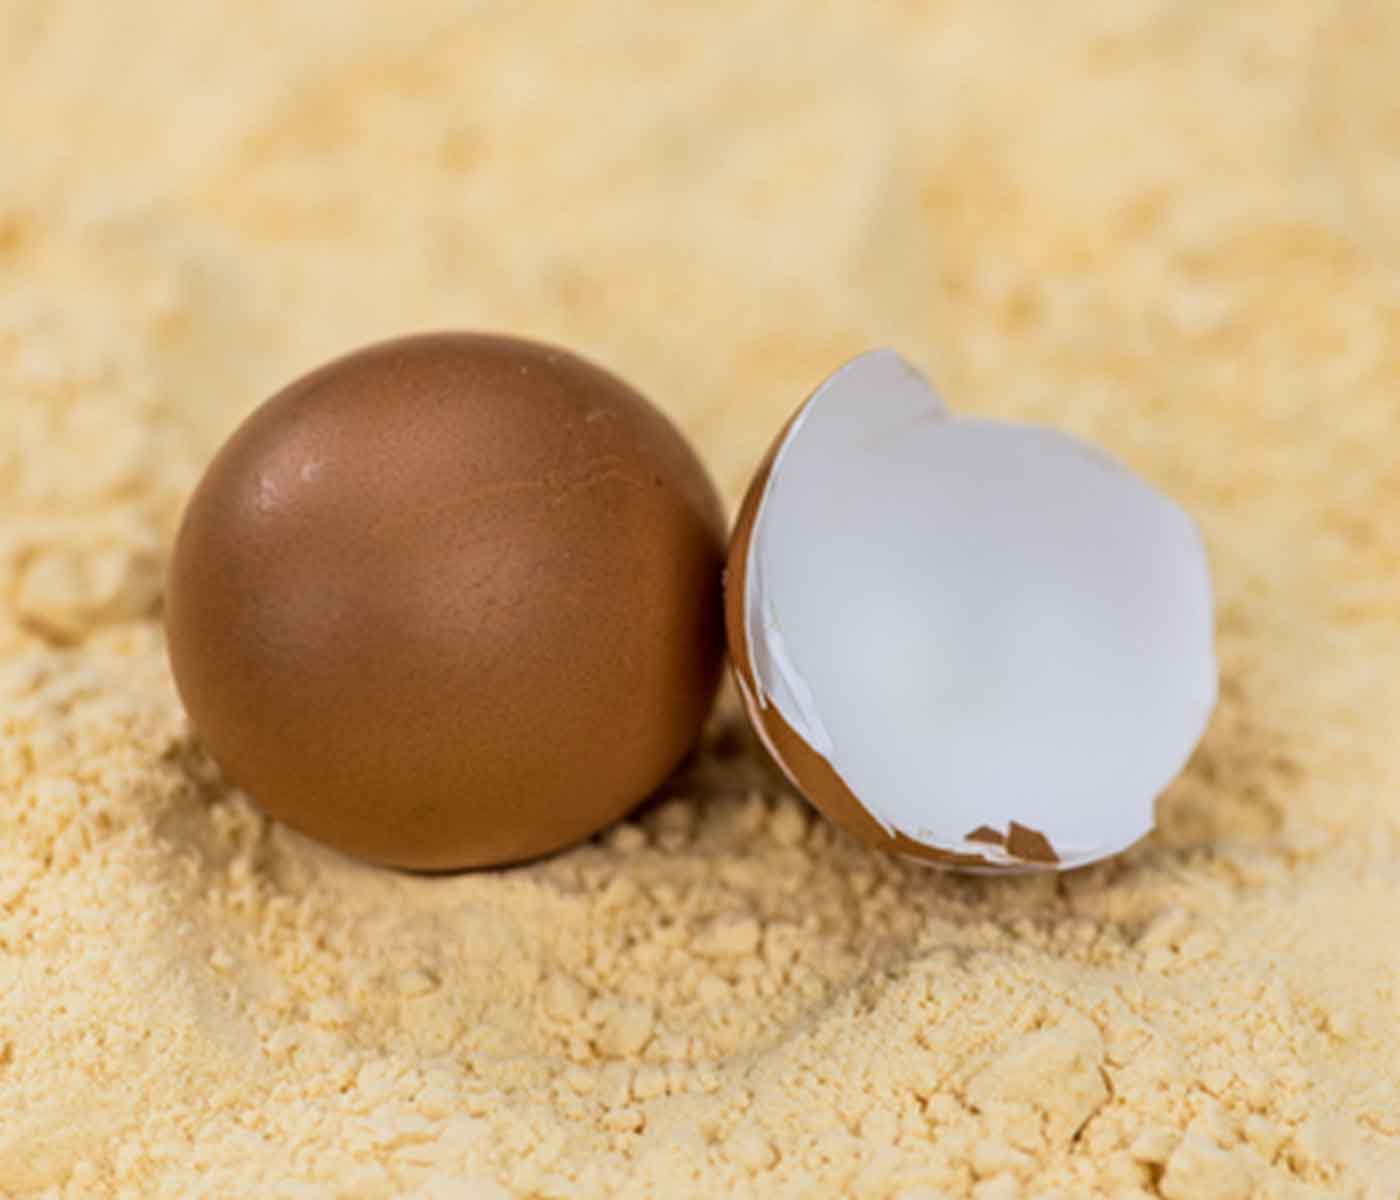 البيض المجفف رذاذياً كوسيلة بديلة لمكافحة سوء التغذية